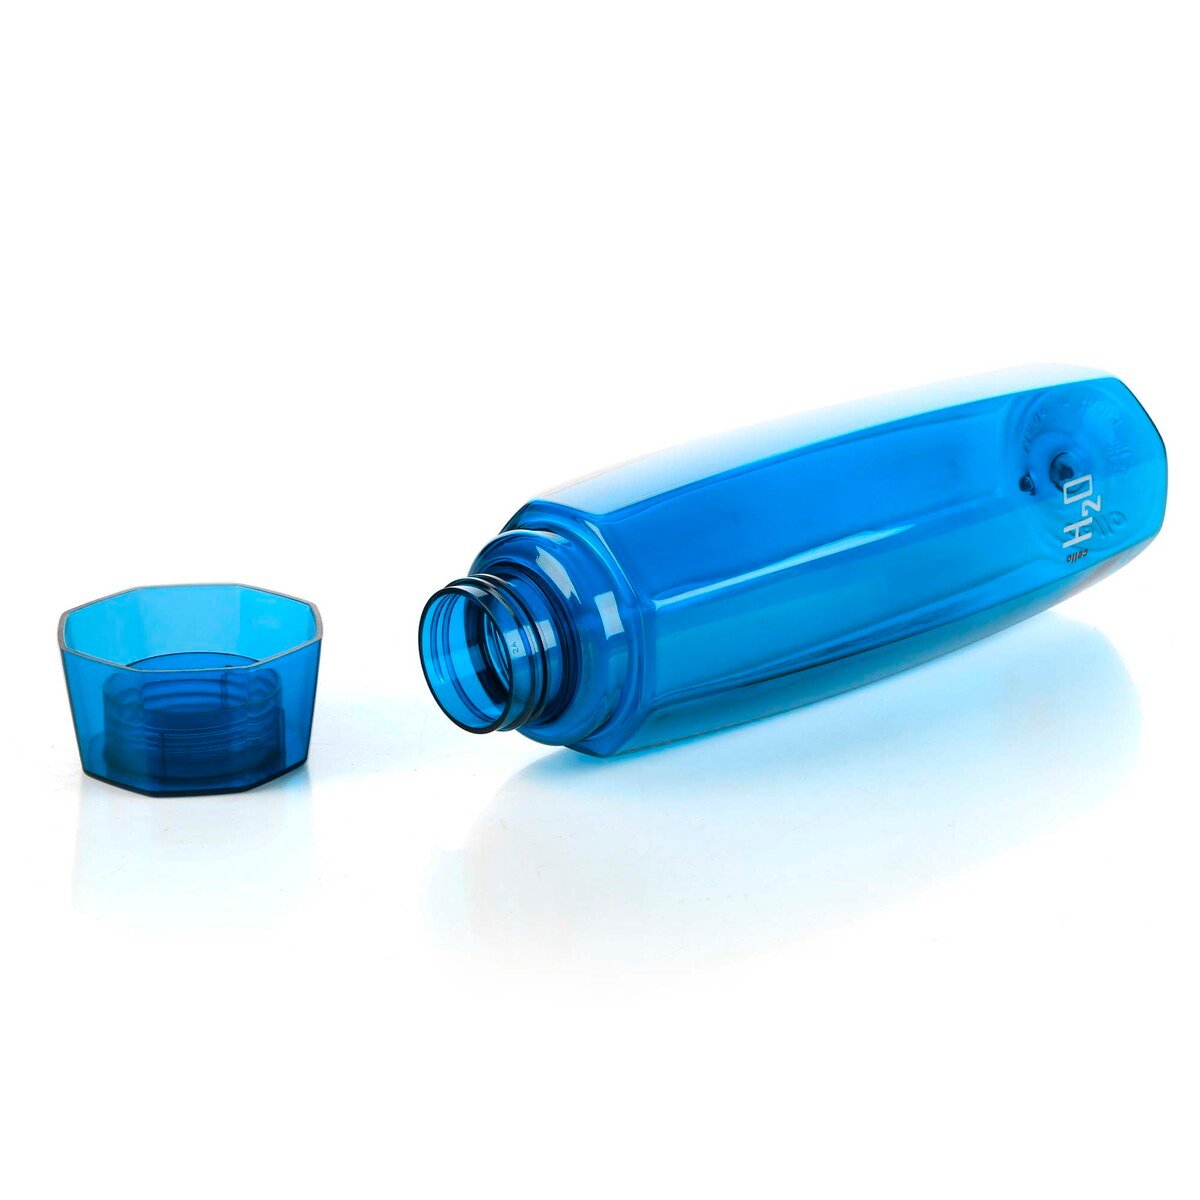 تشيلو H2O أوكتا عبوة مياه بلاستيك، 1 لتر، أزرق، Octav1000